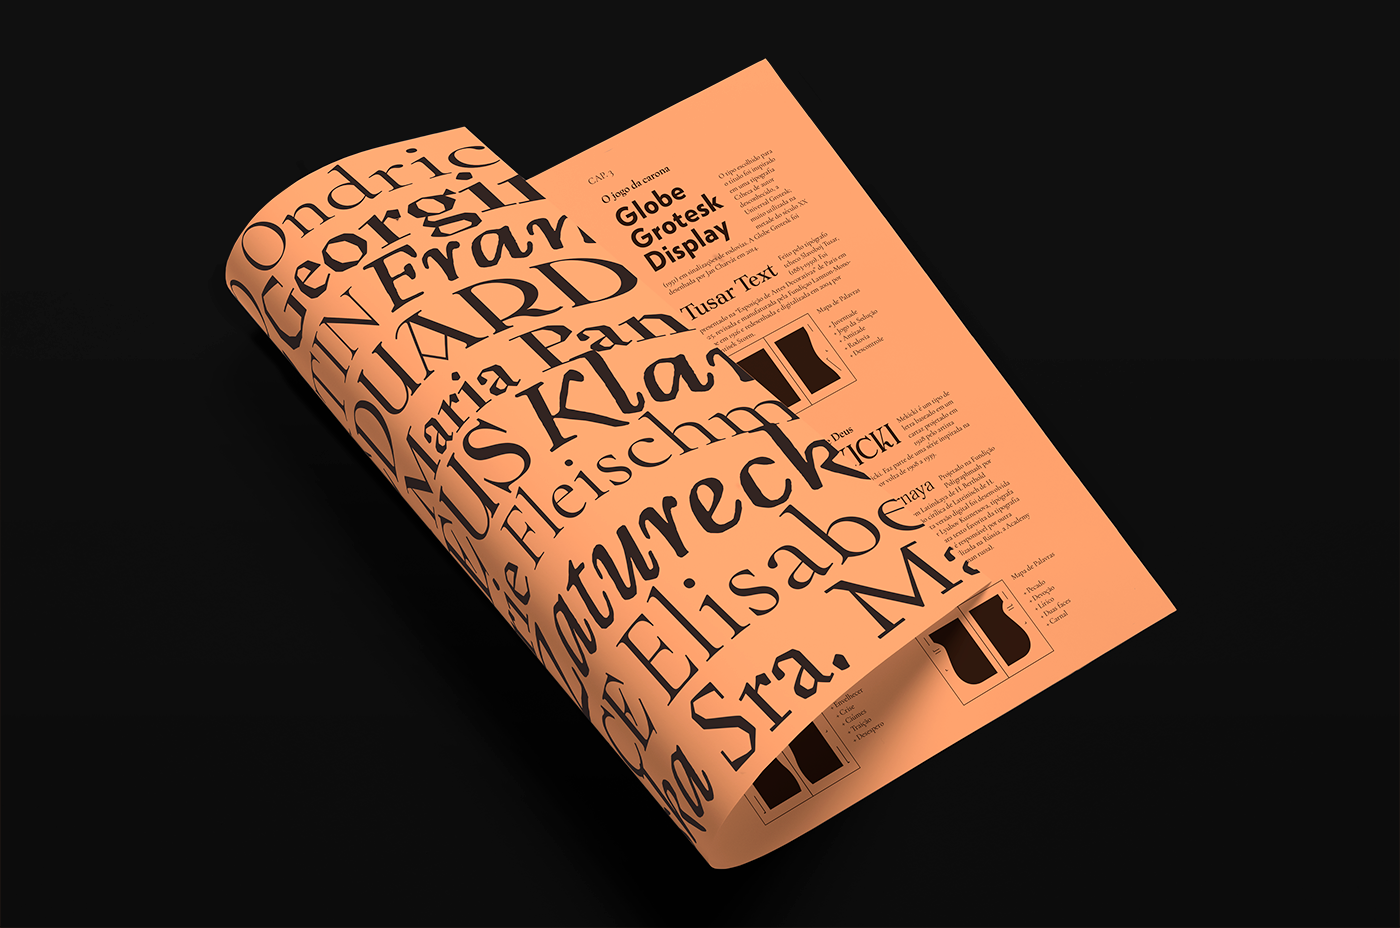 milankundera editorial designgrafico projetografico tipografia diagramação InDesign Livro